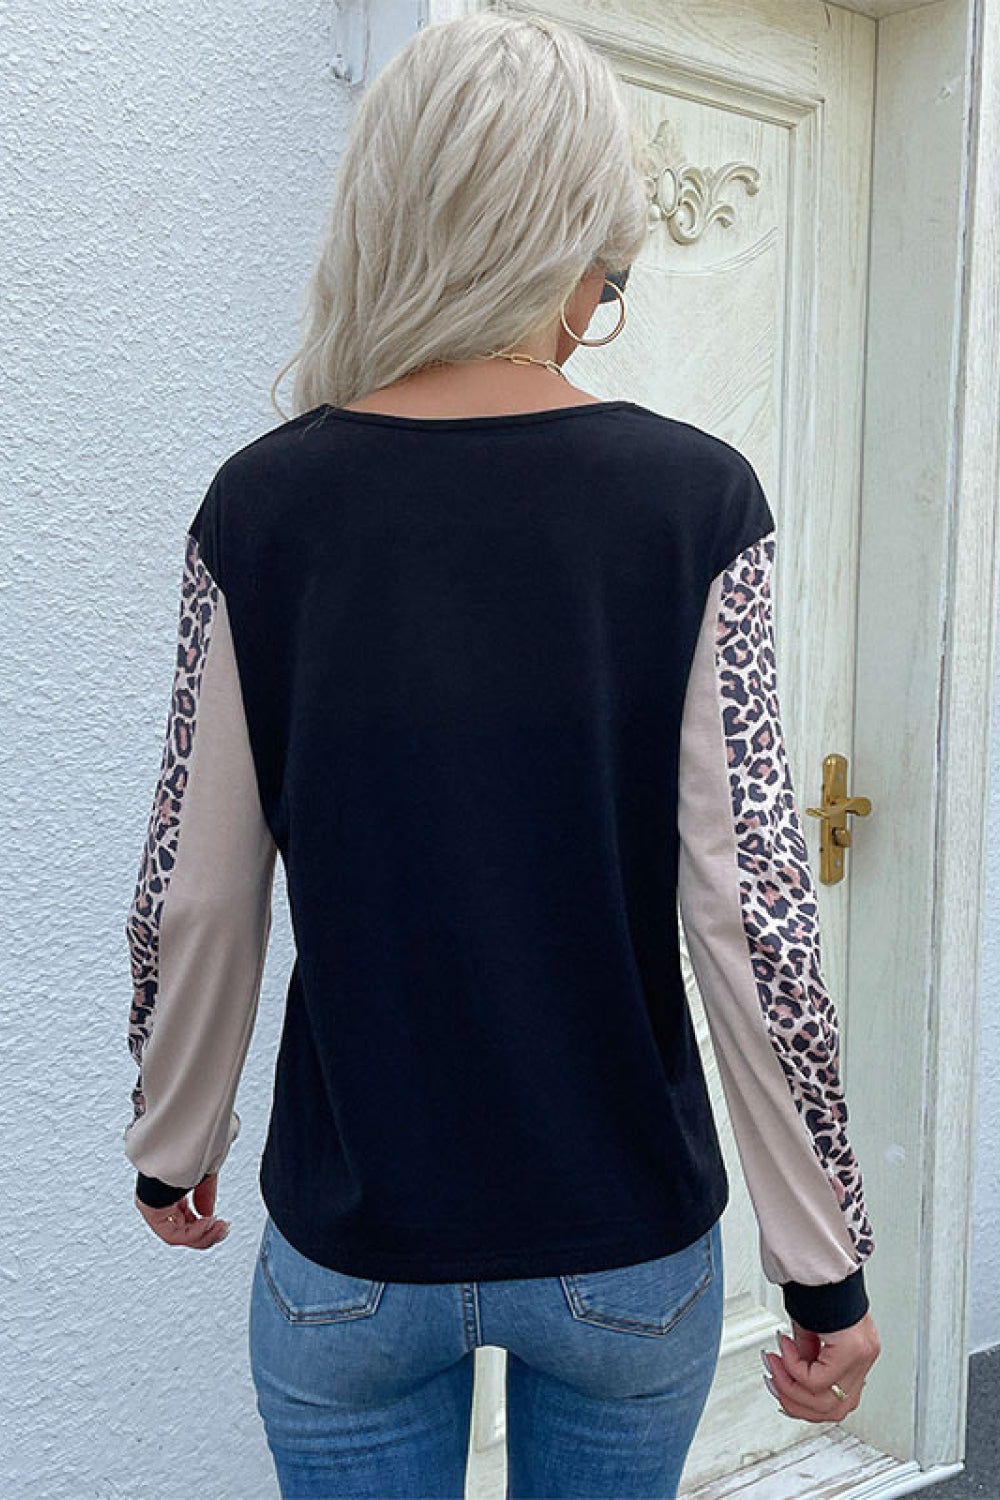 Leopard Color Block Long Sleeve Sweatshirt - Sweatshirts & Hoodies - FITGGINS